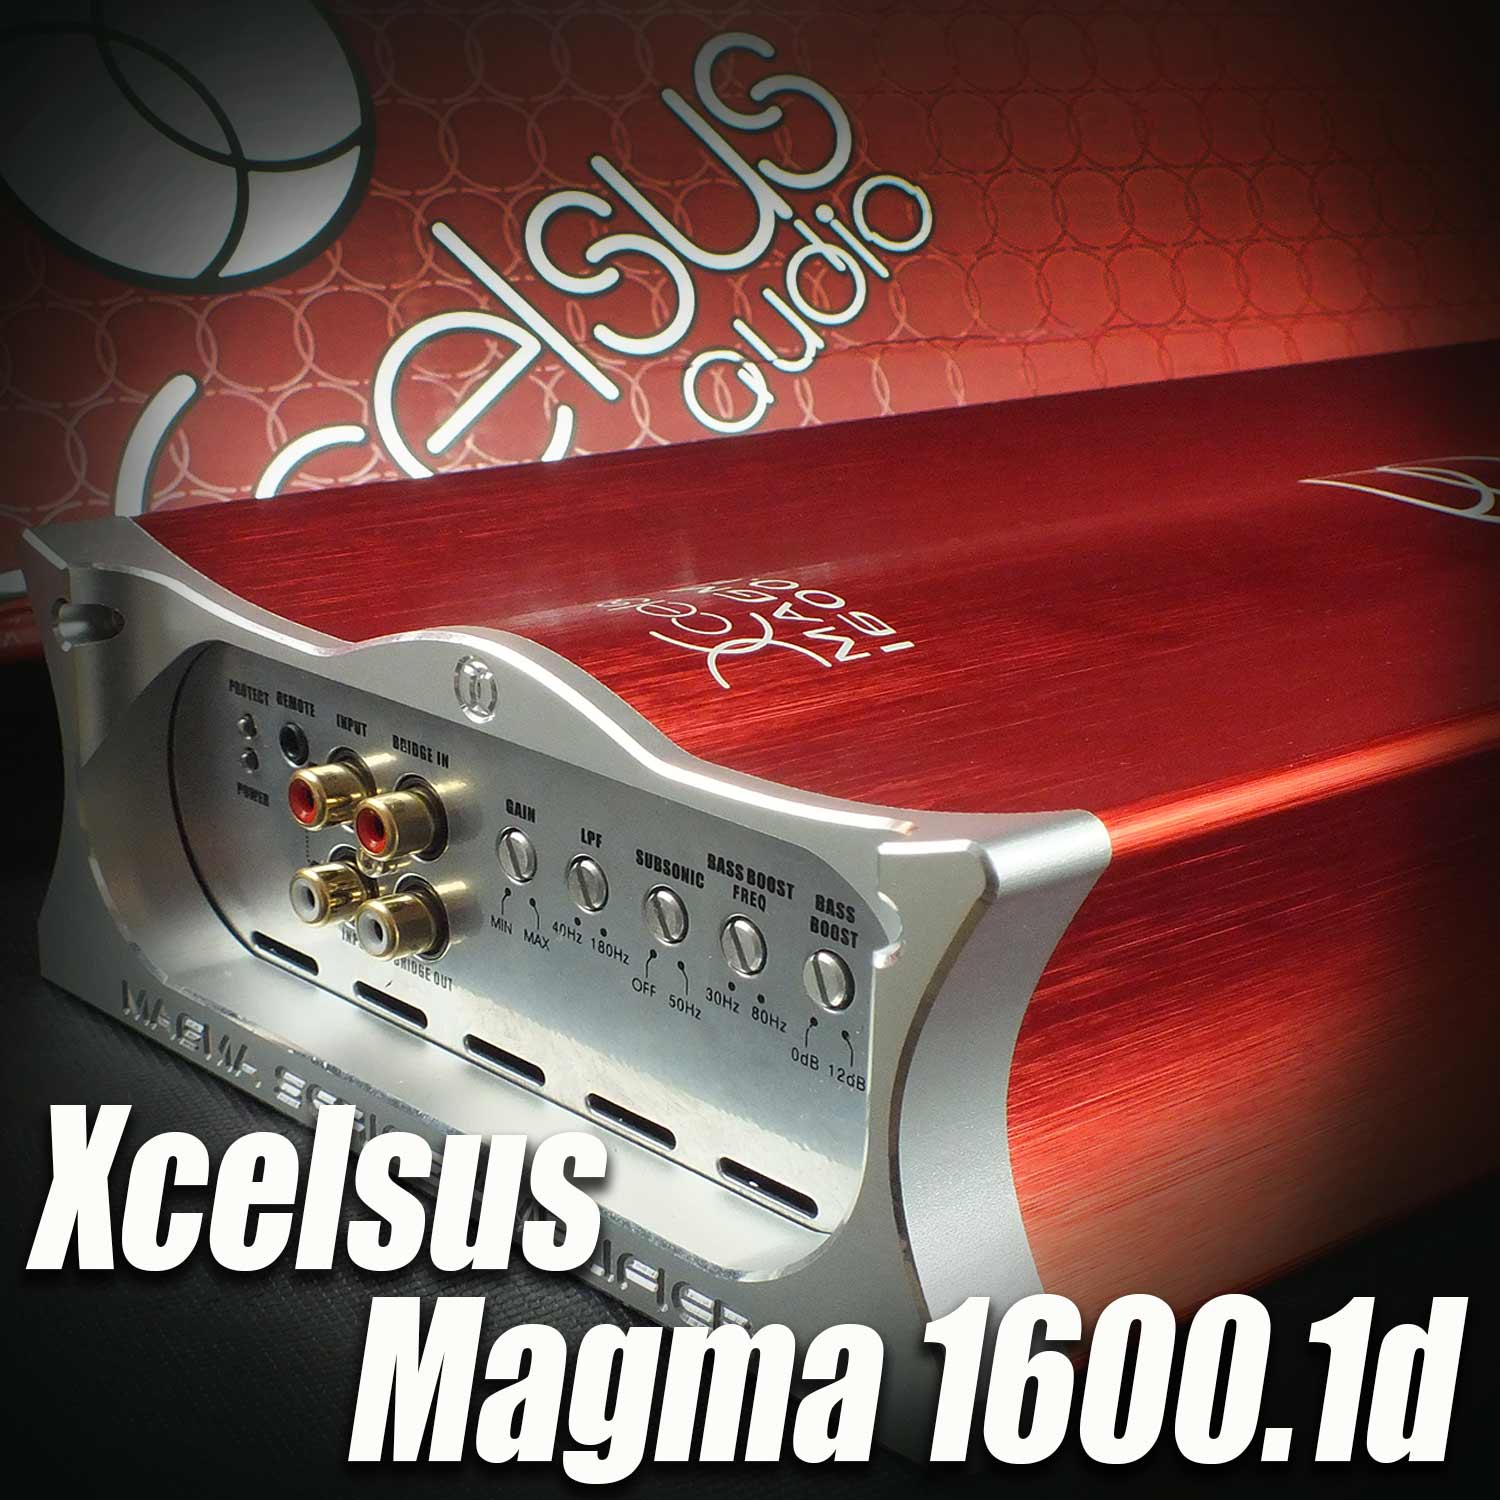 xcelsus audio magma 1600.1d